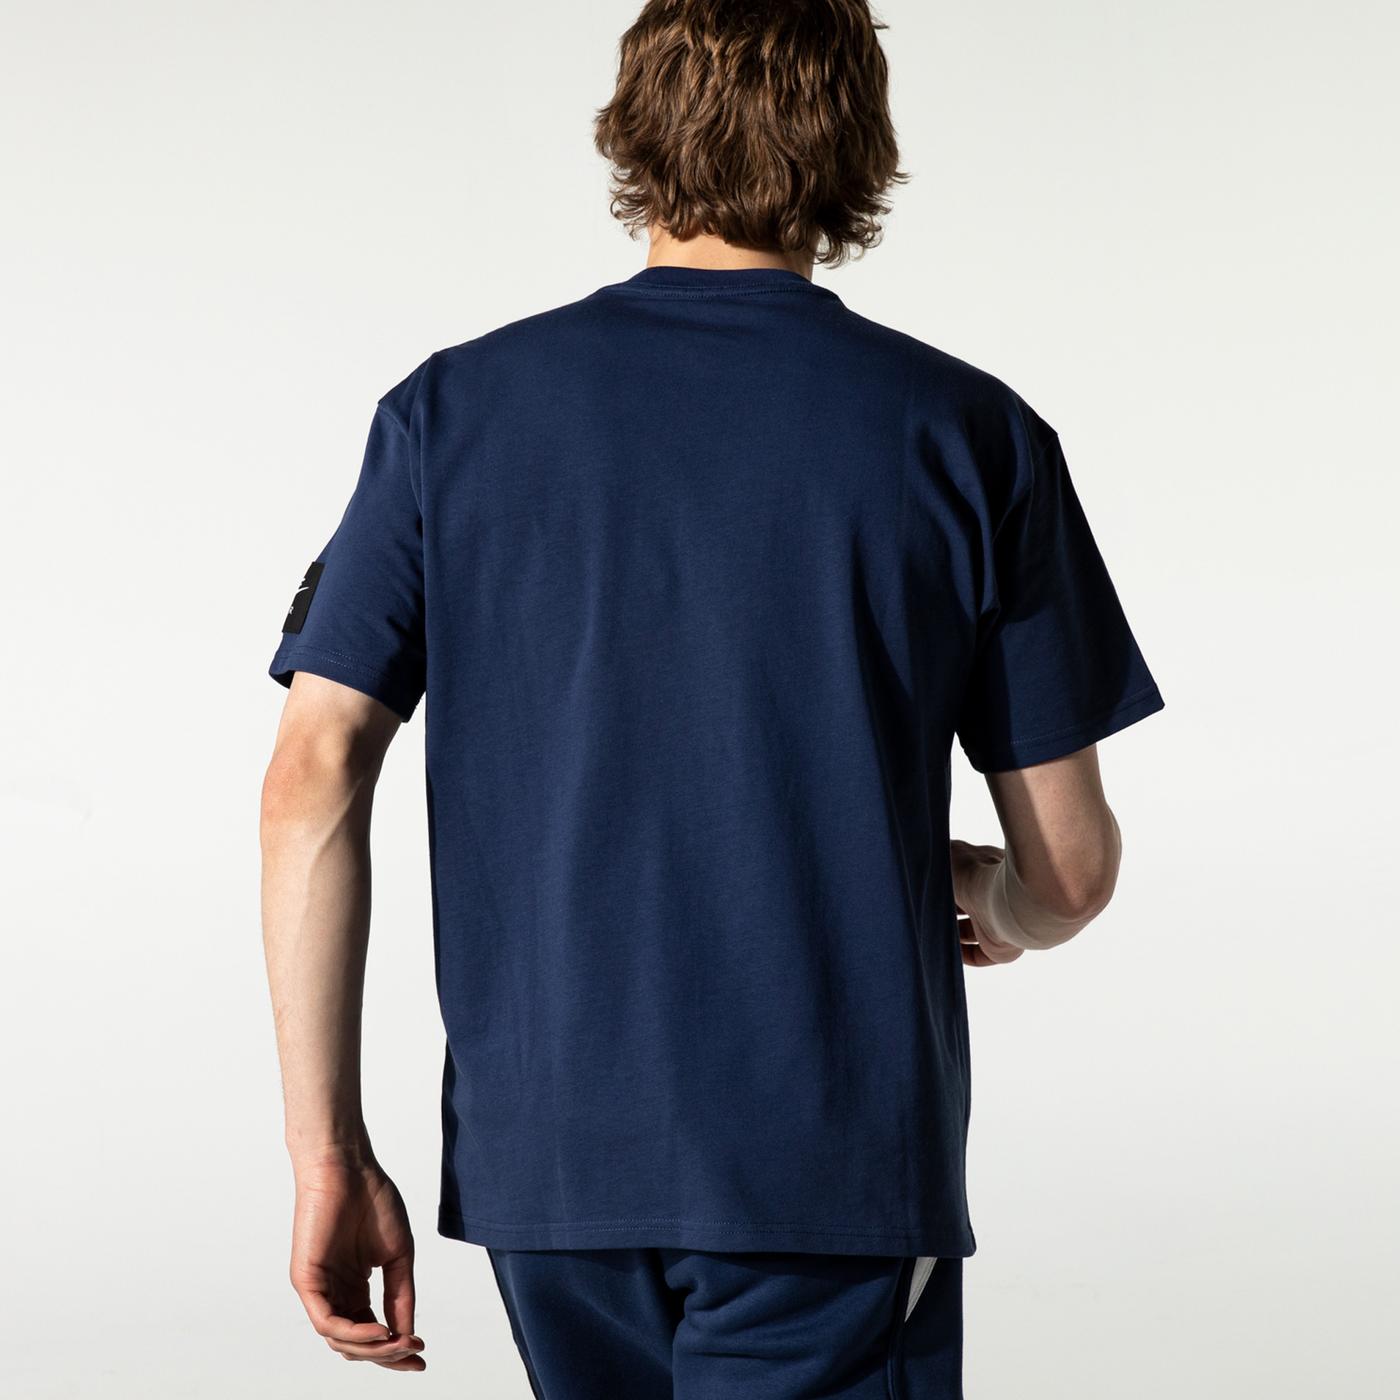 Nike Air Erkek Mavi T-Shirt